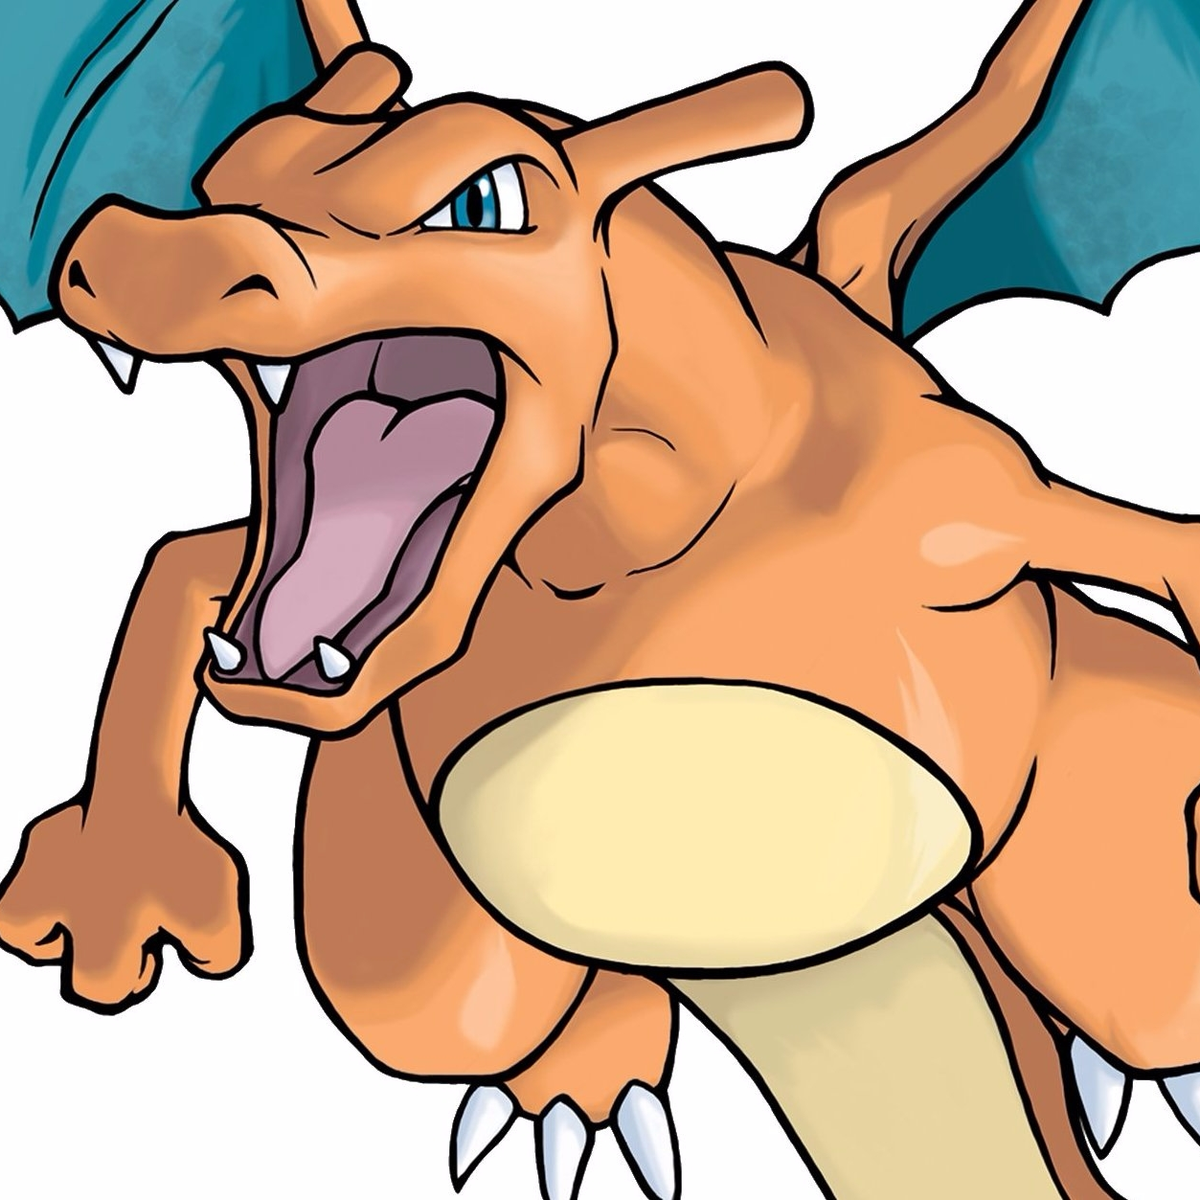 Charmander é o melhor Pokémon inicial da primeira geração